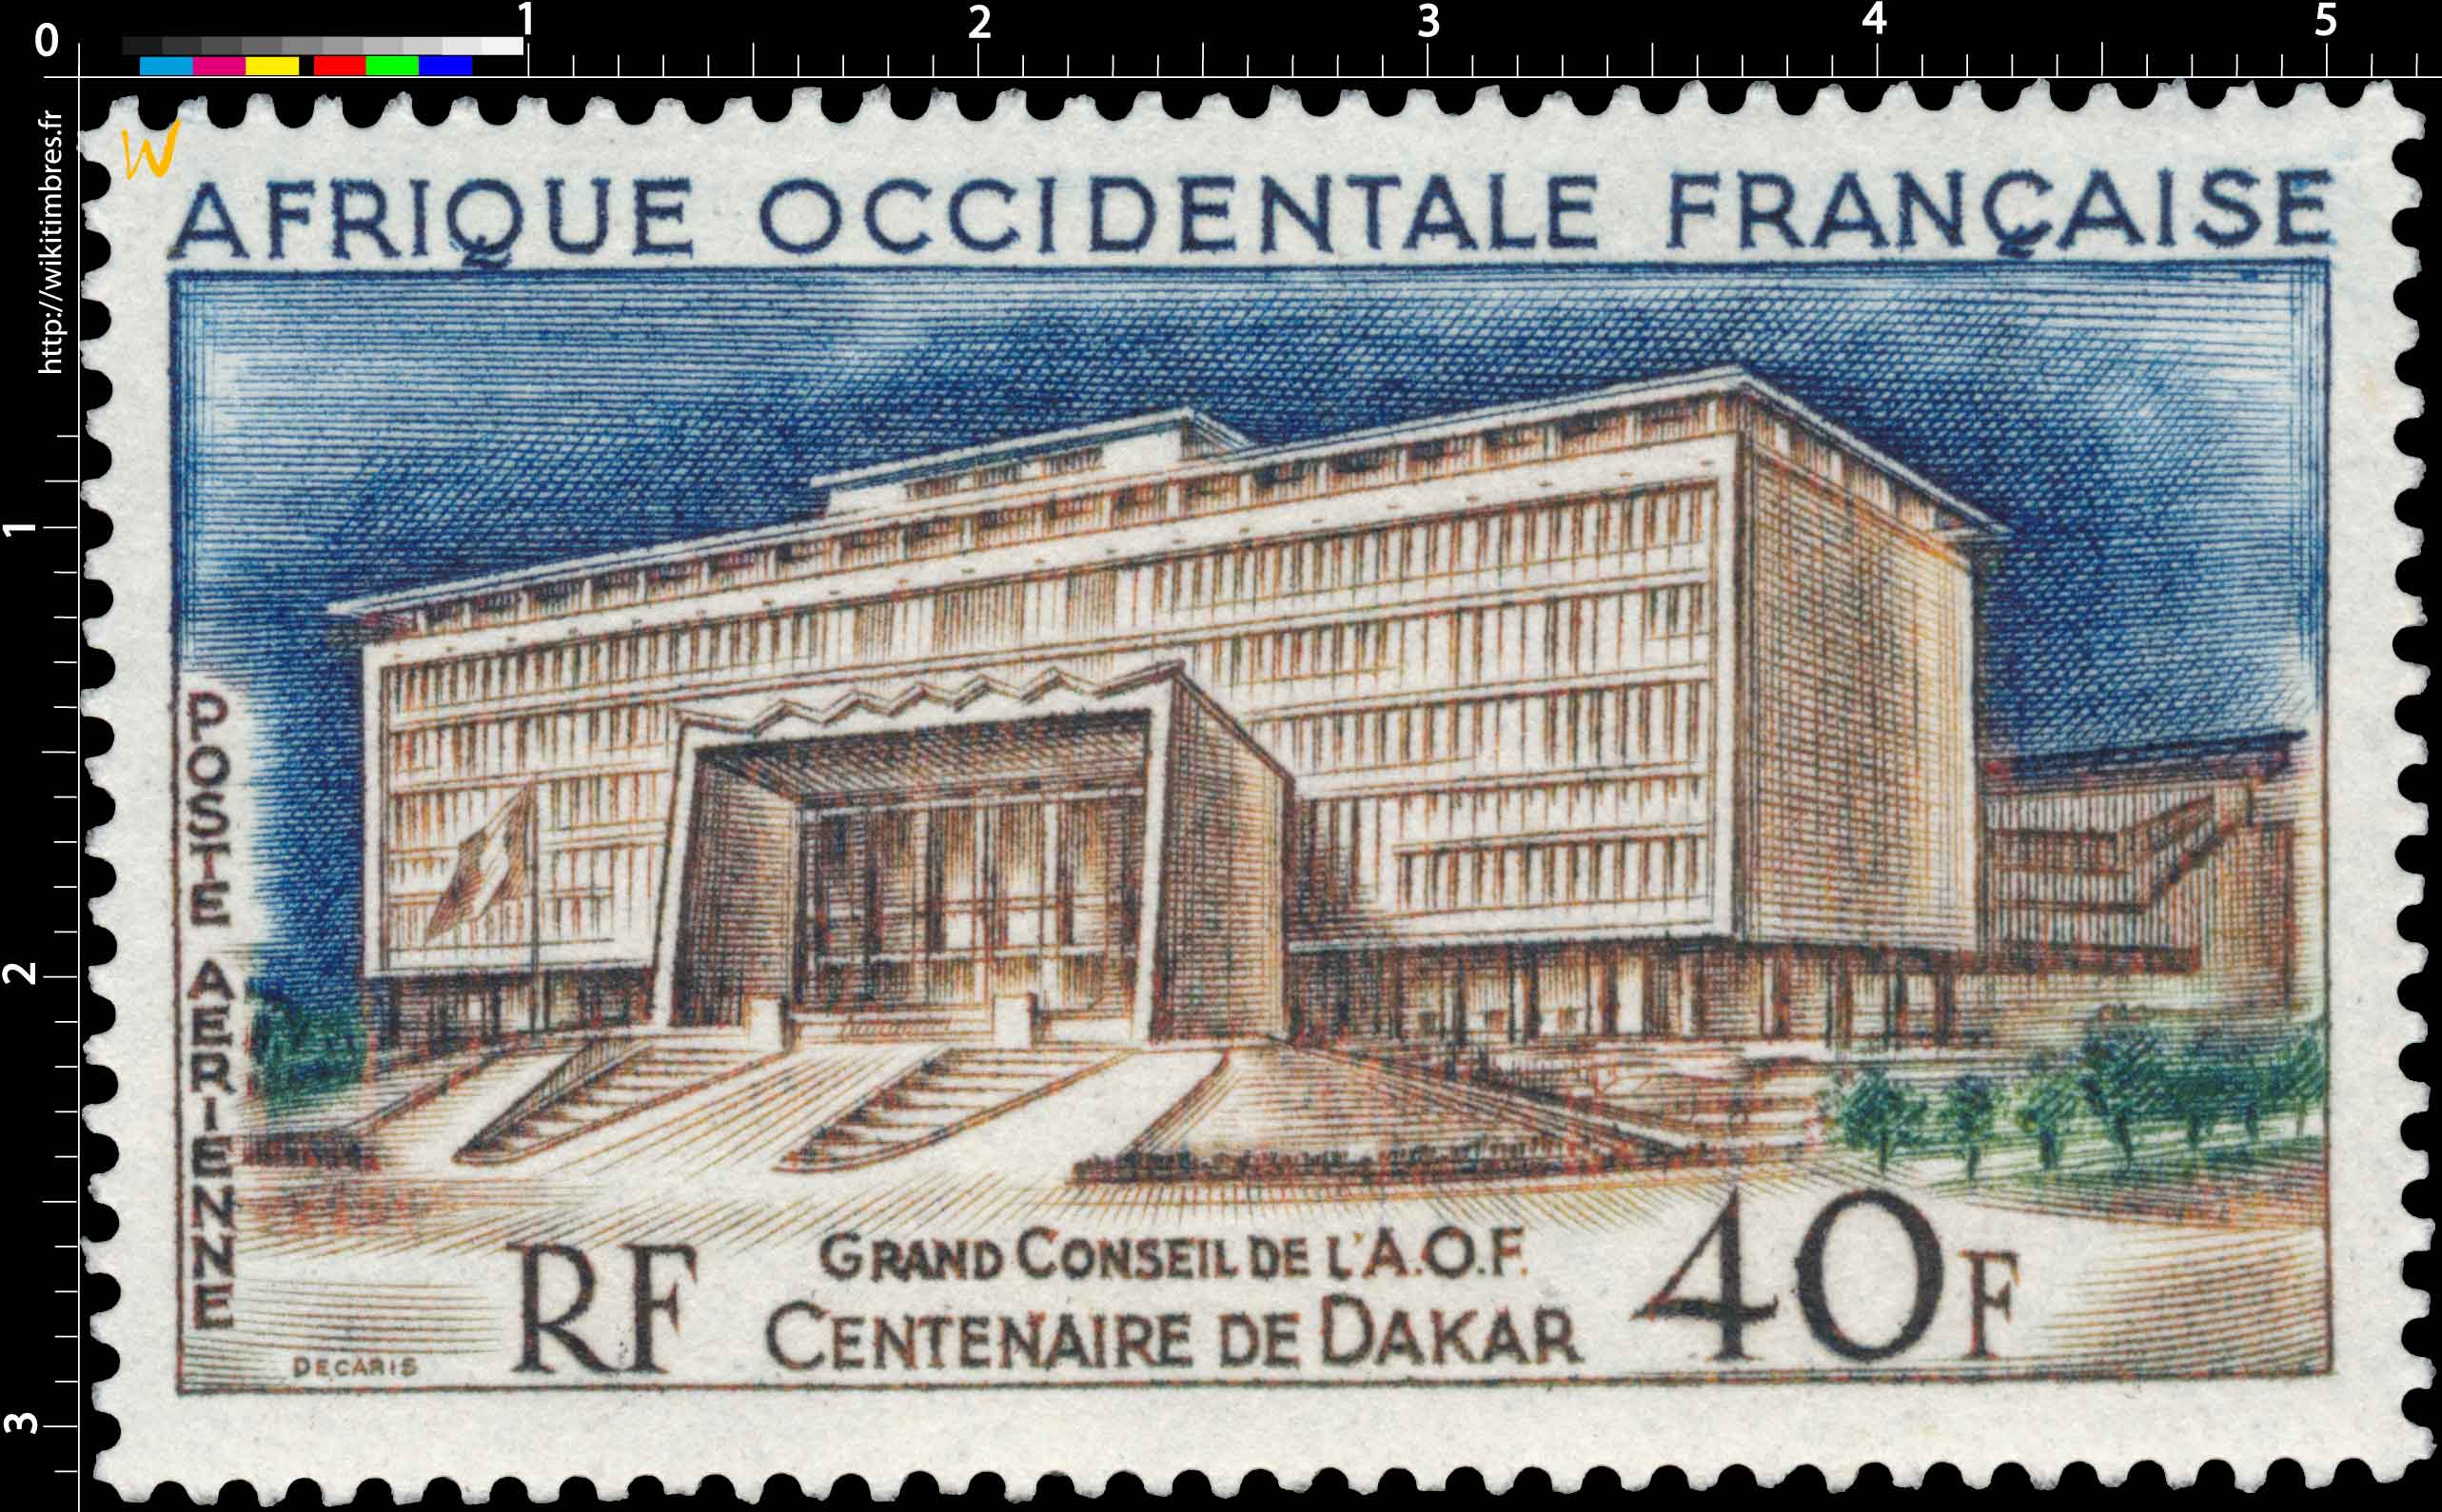 Afrique Occidentale Française - Centenaire de Dakar, Grand Conseil de l'A.O.F.